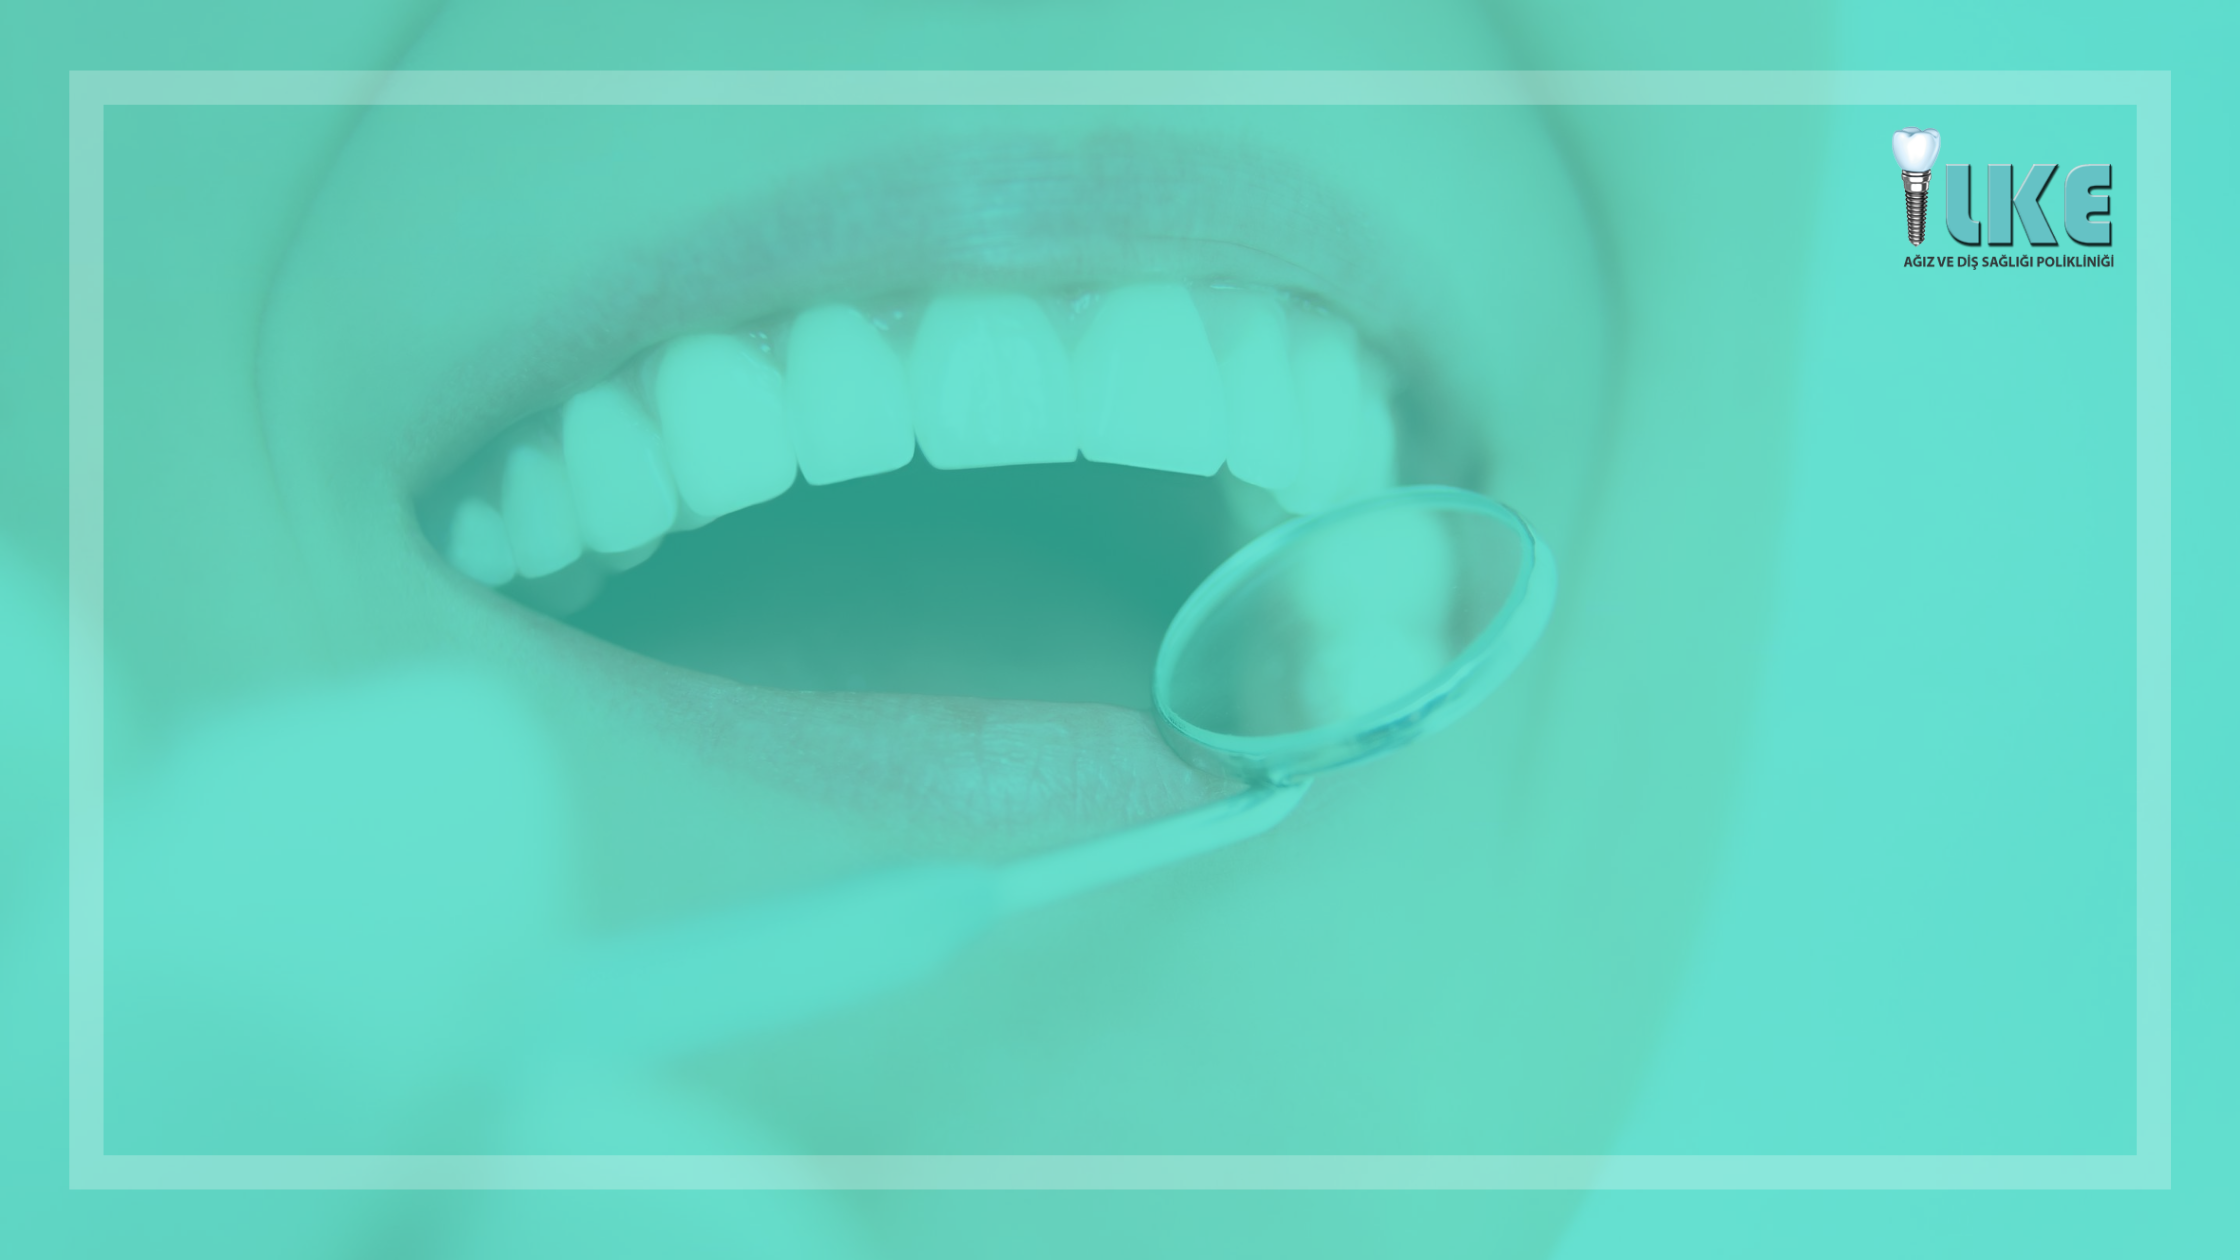 kanal tedavisi blog banner – Özel İlke Ağız ve Diş Sağlığı Polikliniği